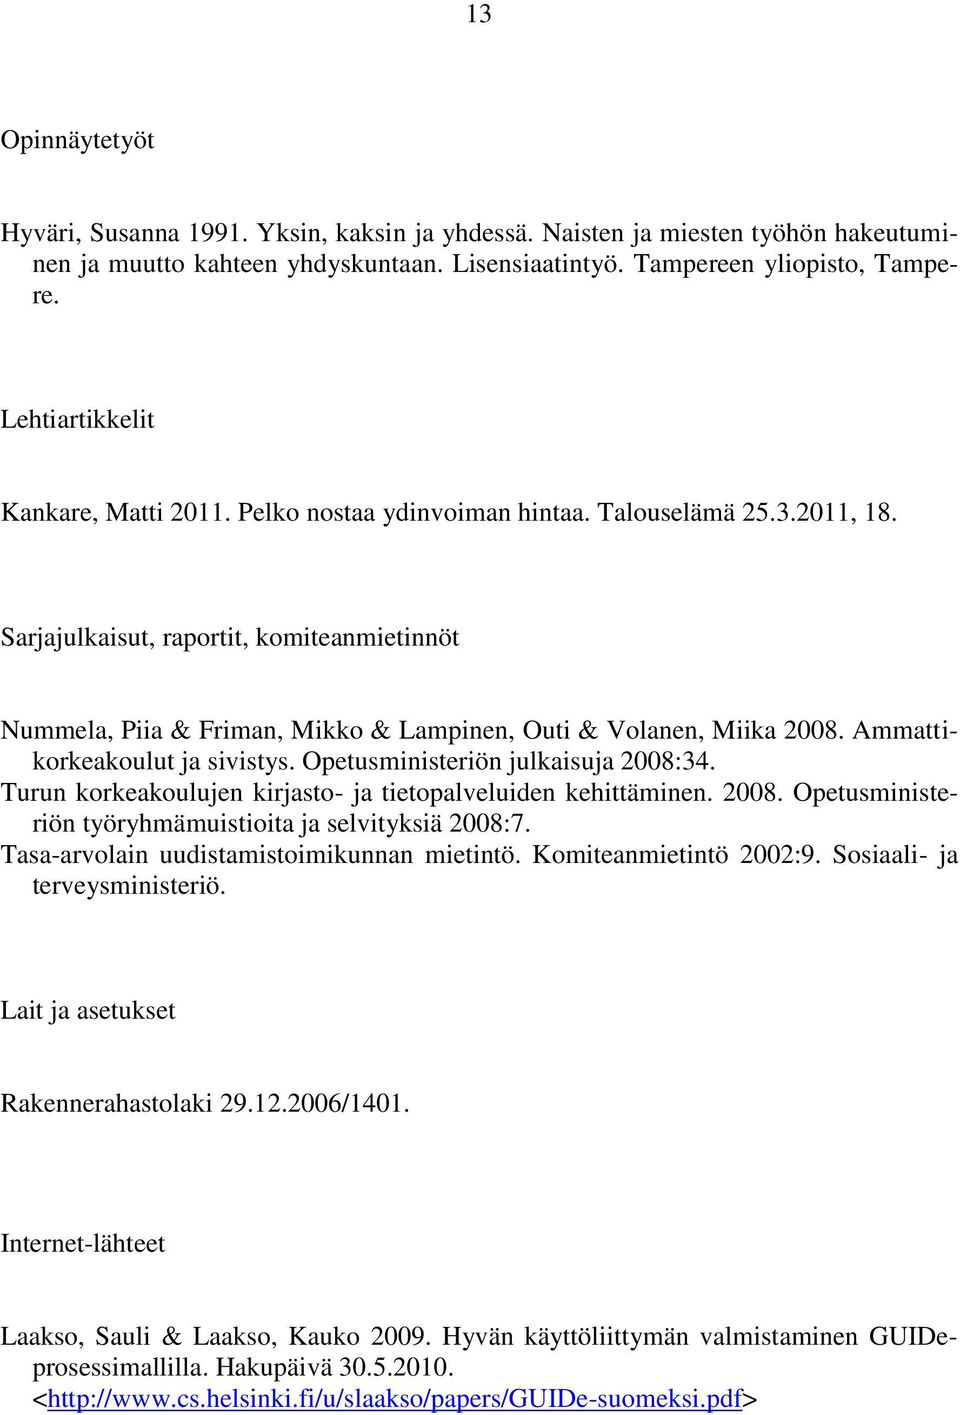 Sarjajulkaisut, raportit, komiteanmietinnöt Nummela, Piia & Friman, Mikko & Lampinen, Outi & Volanen, Miika 2008. Ammattikorkeakoulut ja sivistys. Opetusministeriön julkaisuja 2008:34.